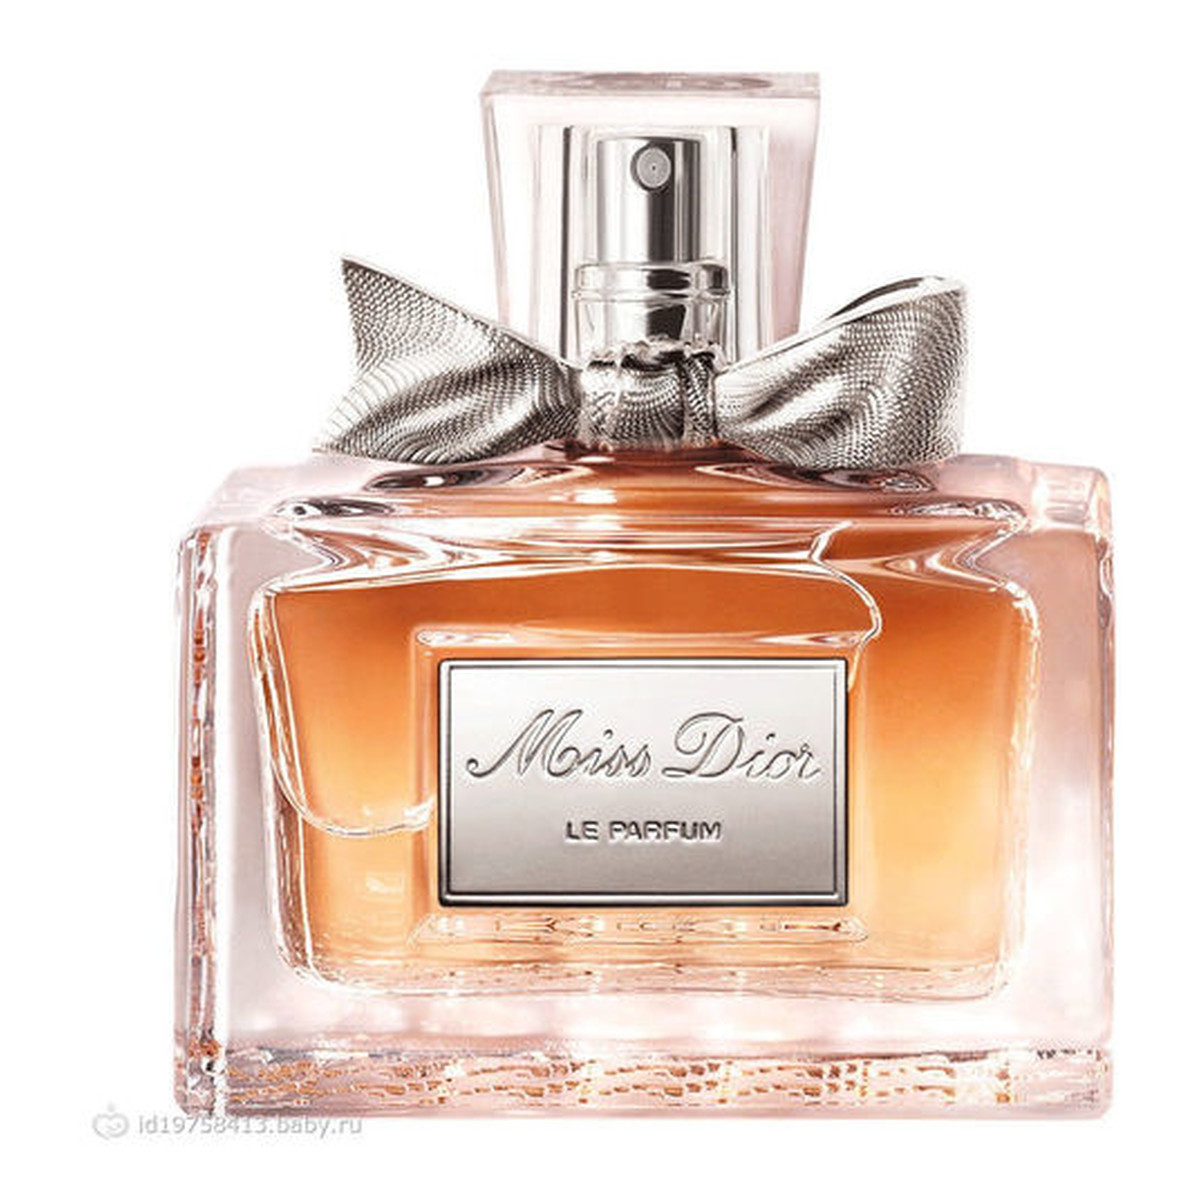 Dior Miss Dior Le Parfum woda perfumowana Tester 75ml